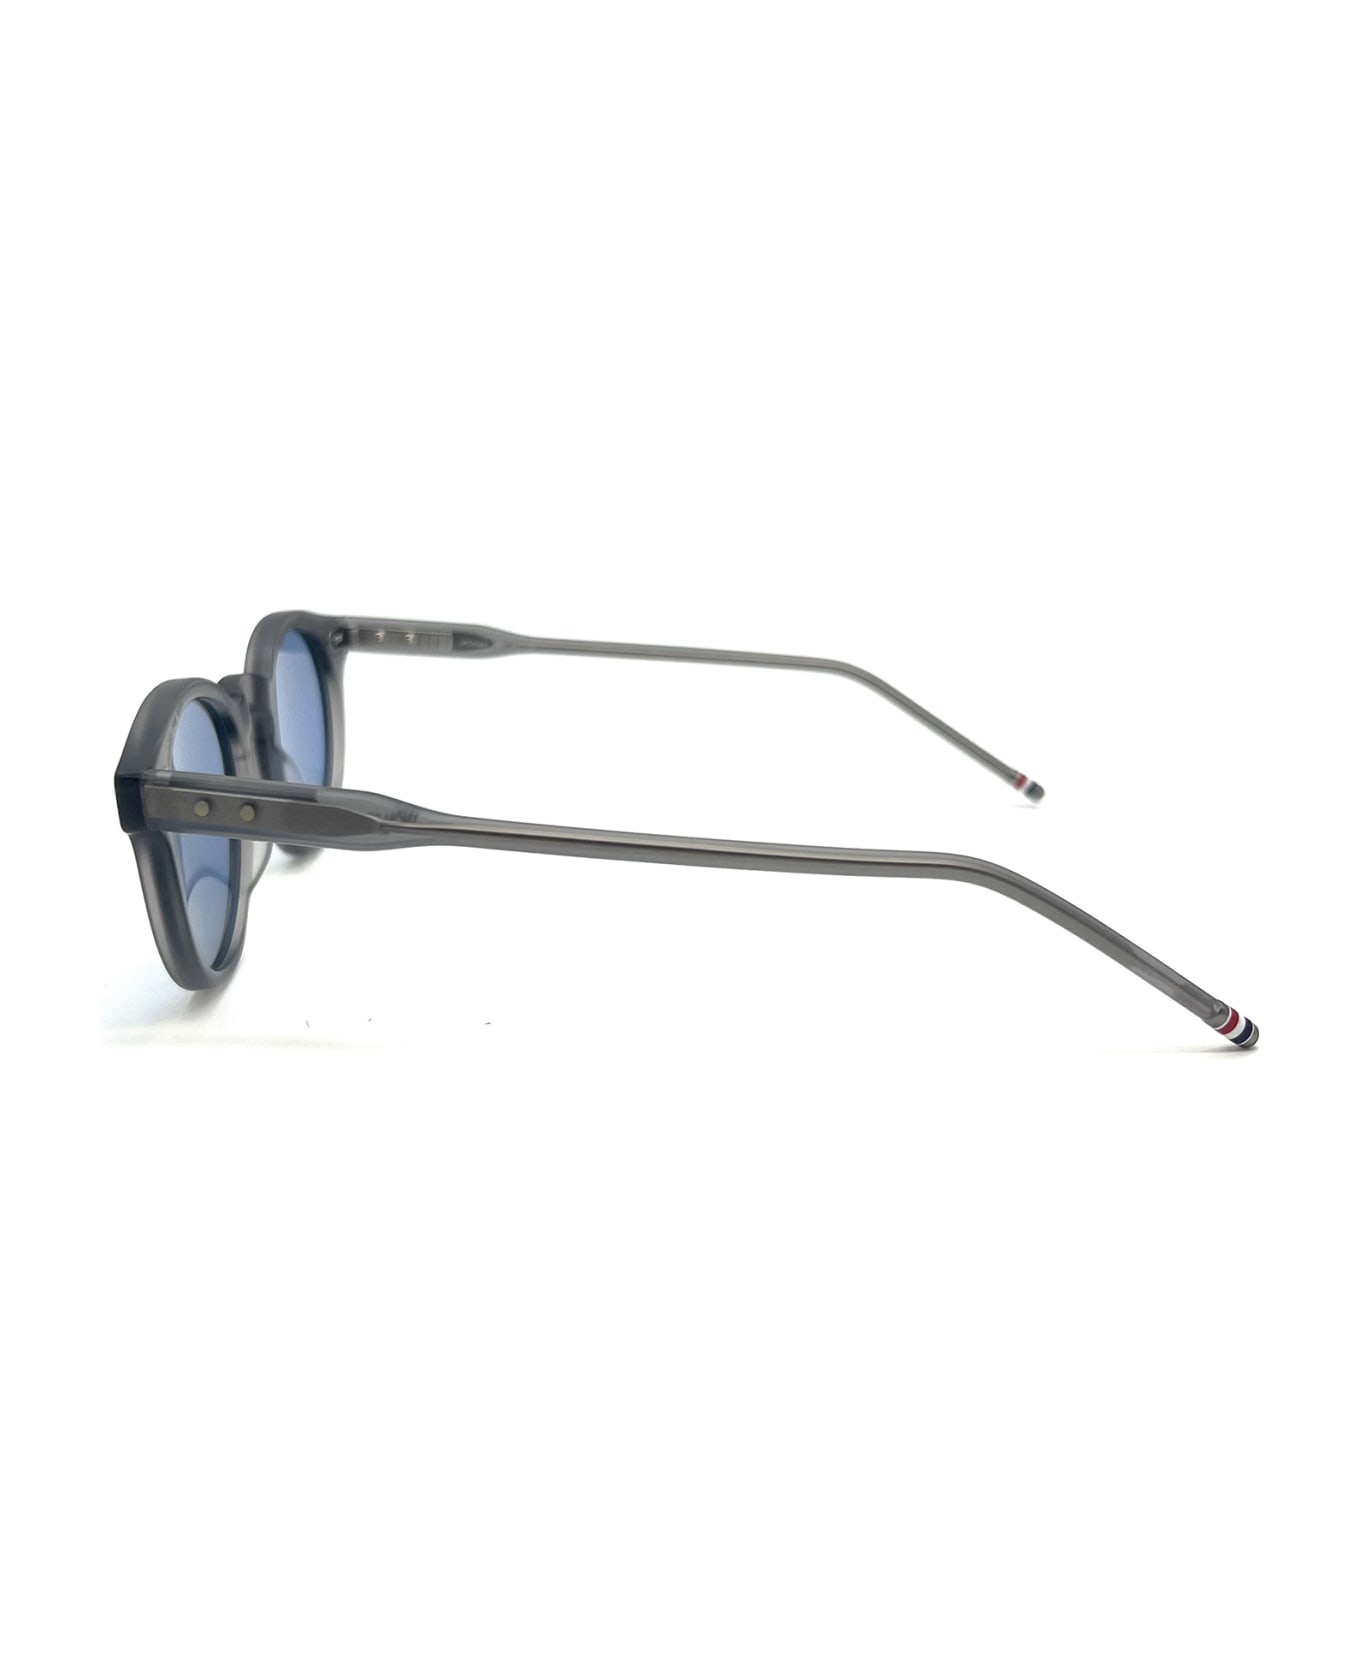 Thom Browne UES404A/G0002 Sunglasses - Light Grey サングラス